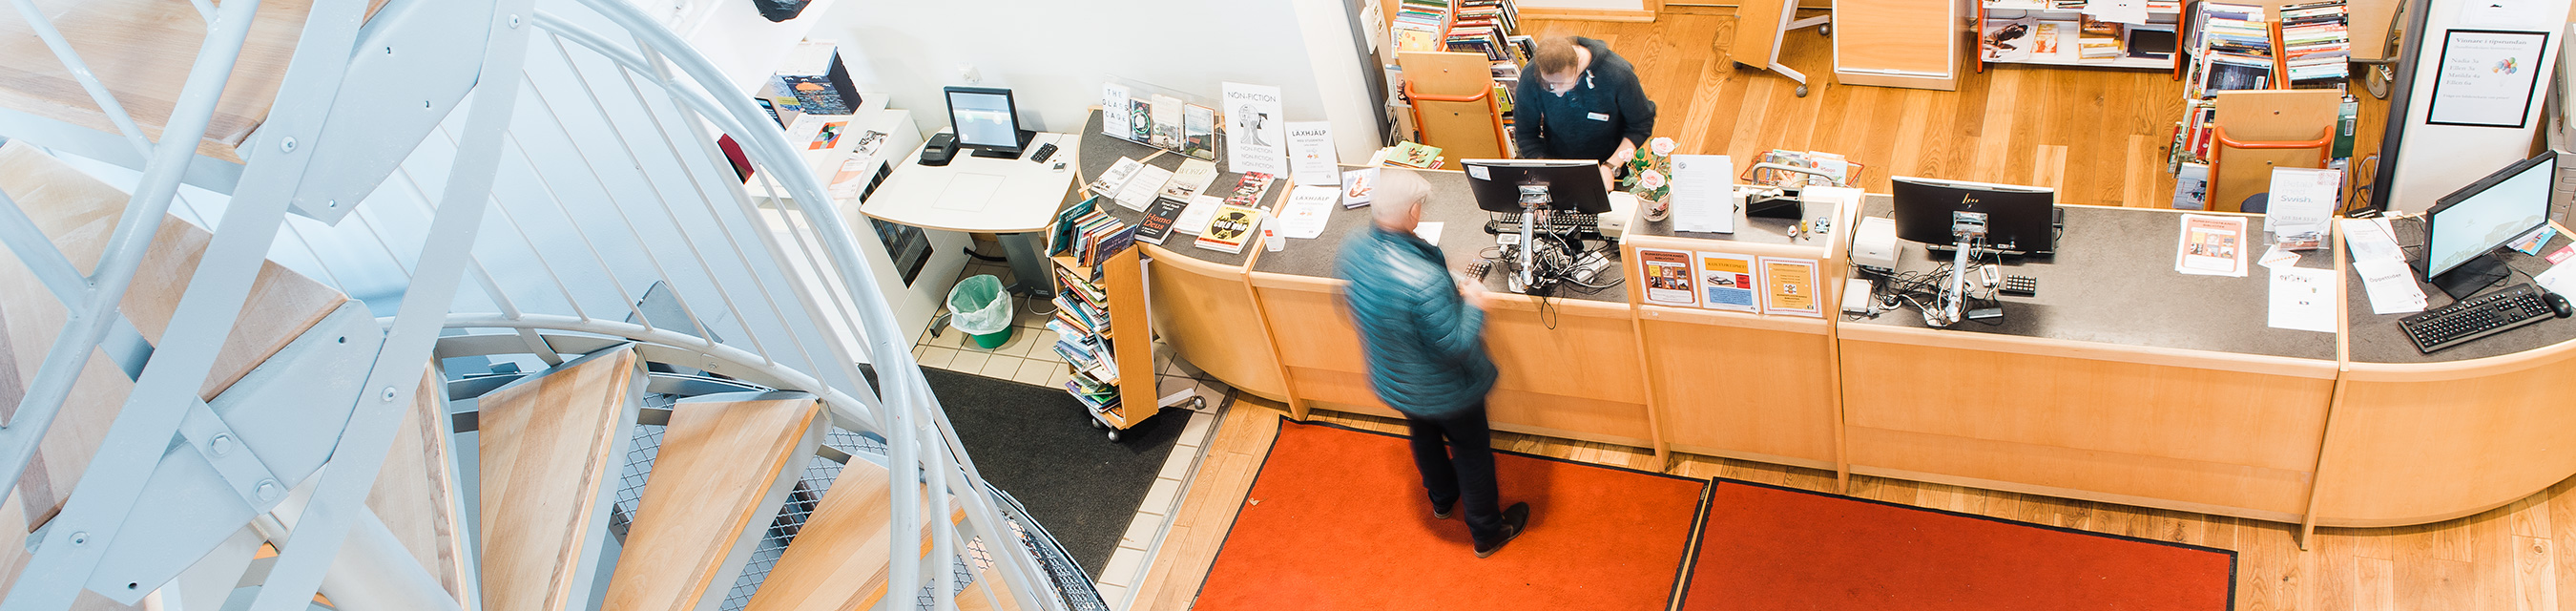 Interiör ovanifrån av Bunkeflostrands bibliotek. Personal hjälper en besökare vid informationsdisken.